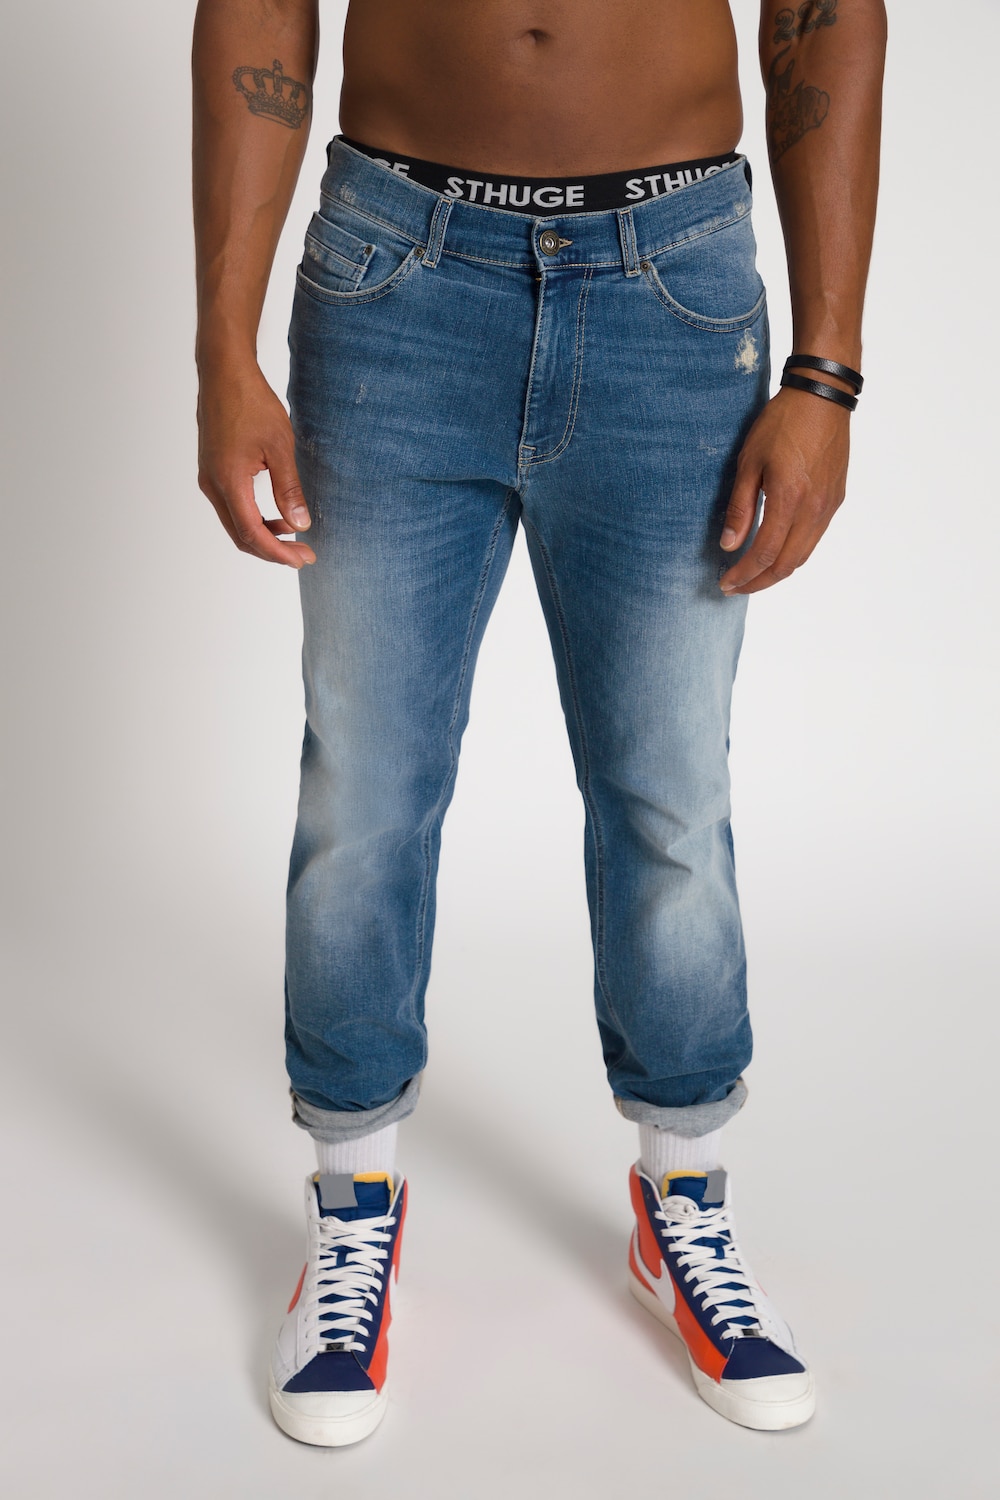 Grote Maten STHUGE jeans FLEXLASTIC®male, blauw, Maat: 64, Katoen, STHUGE